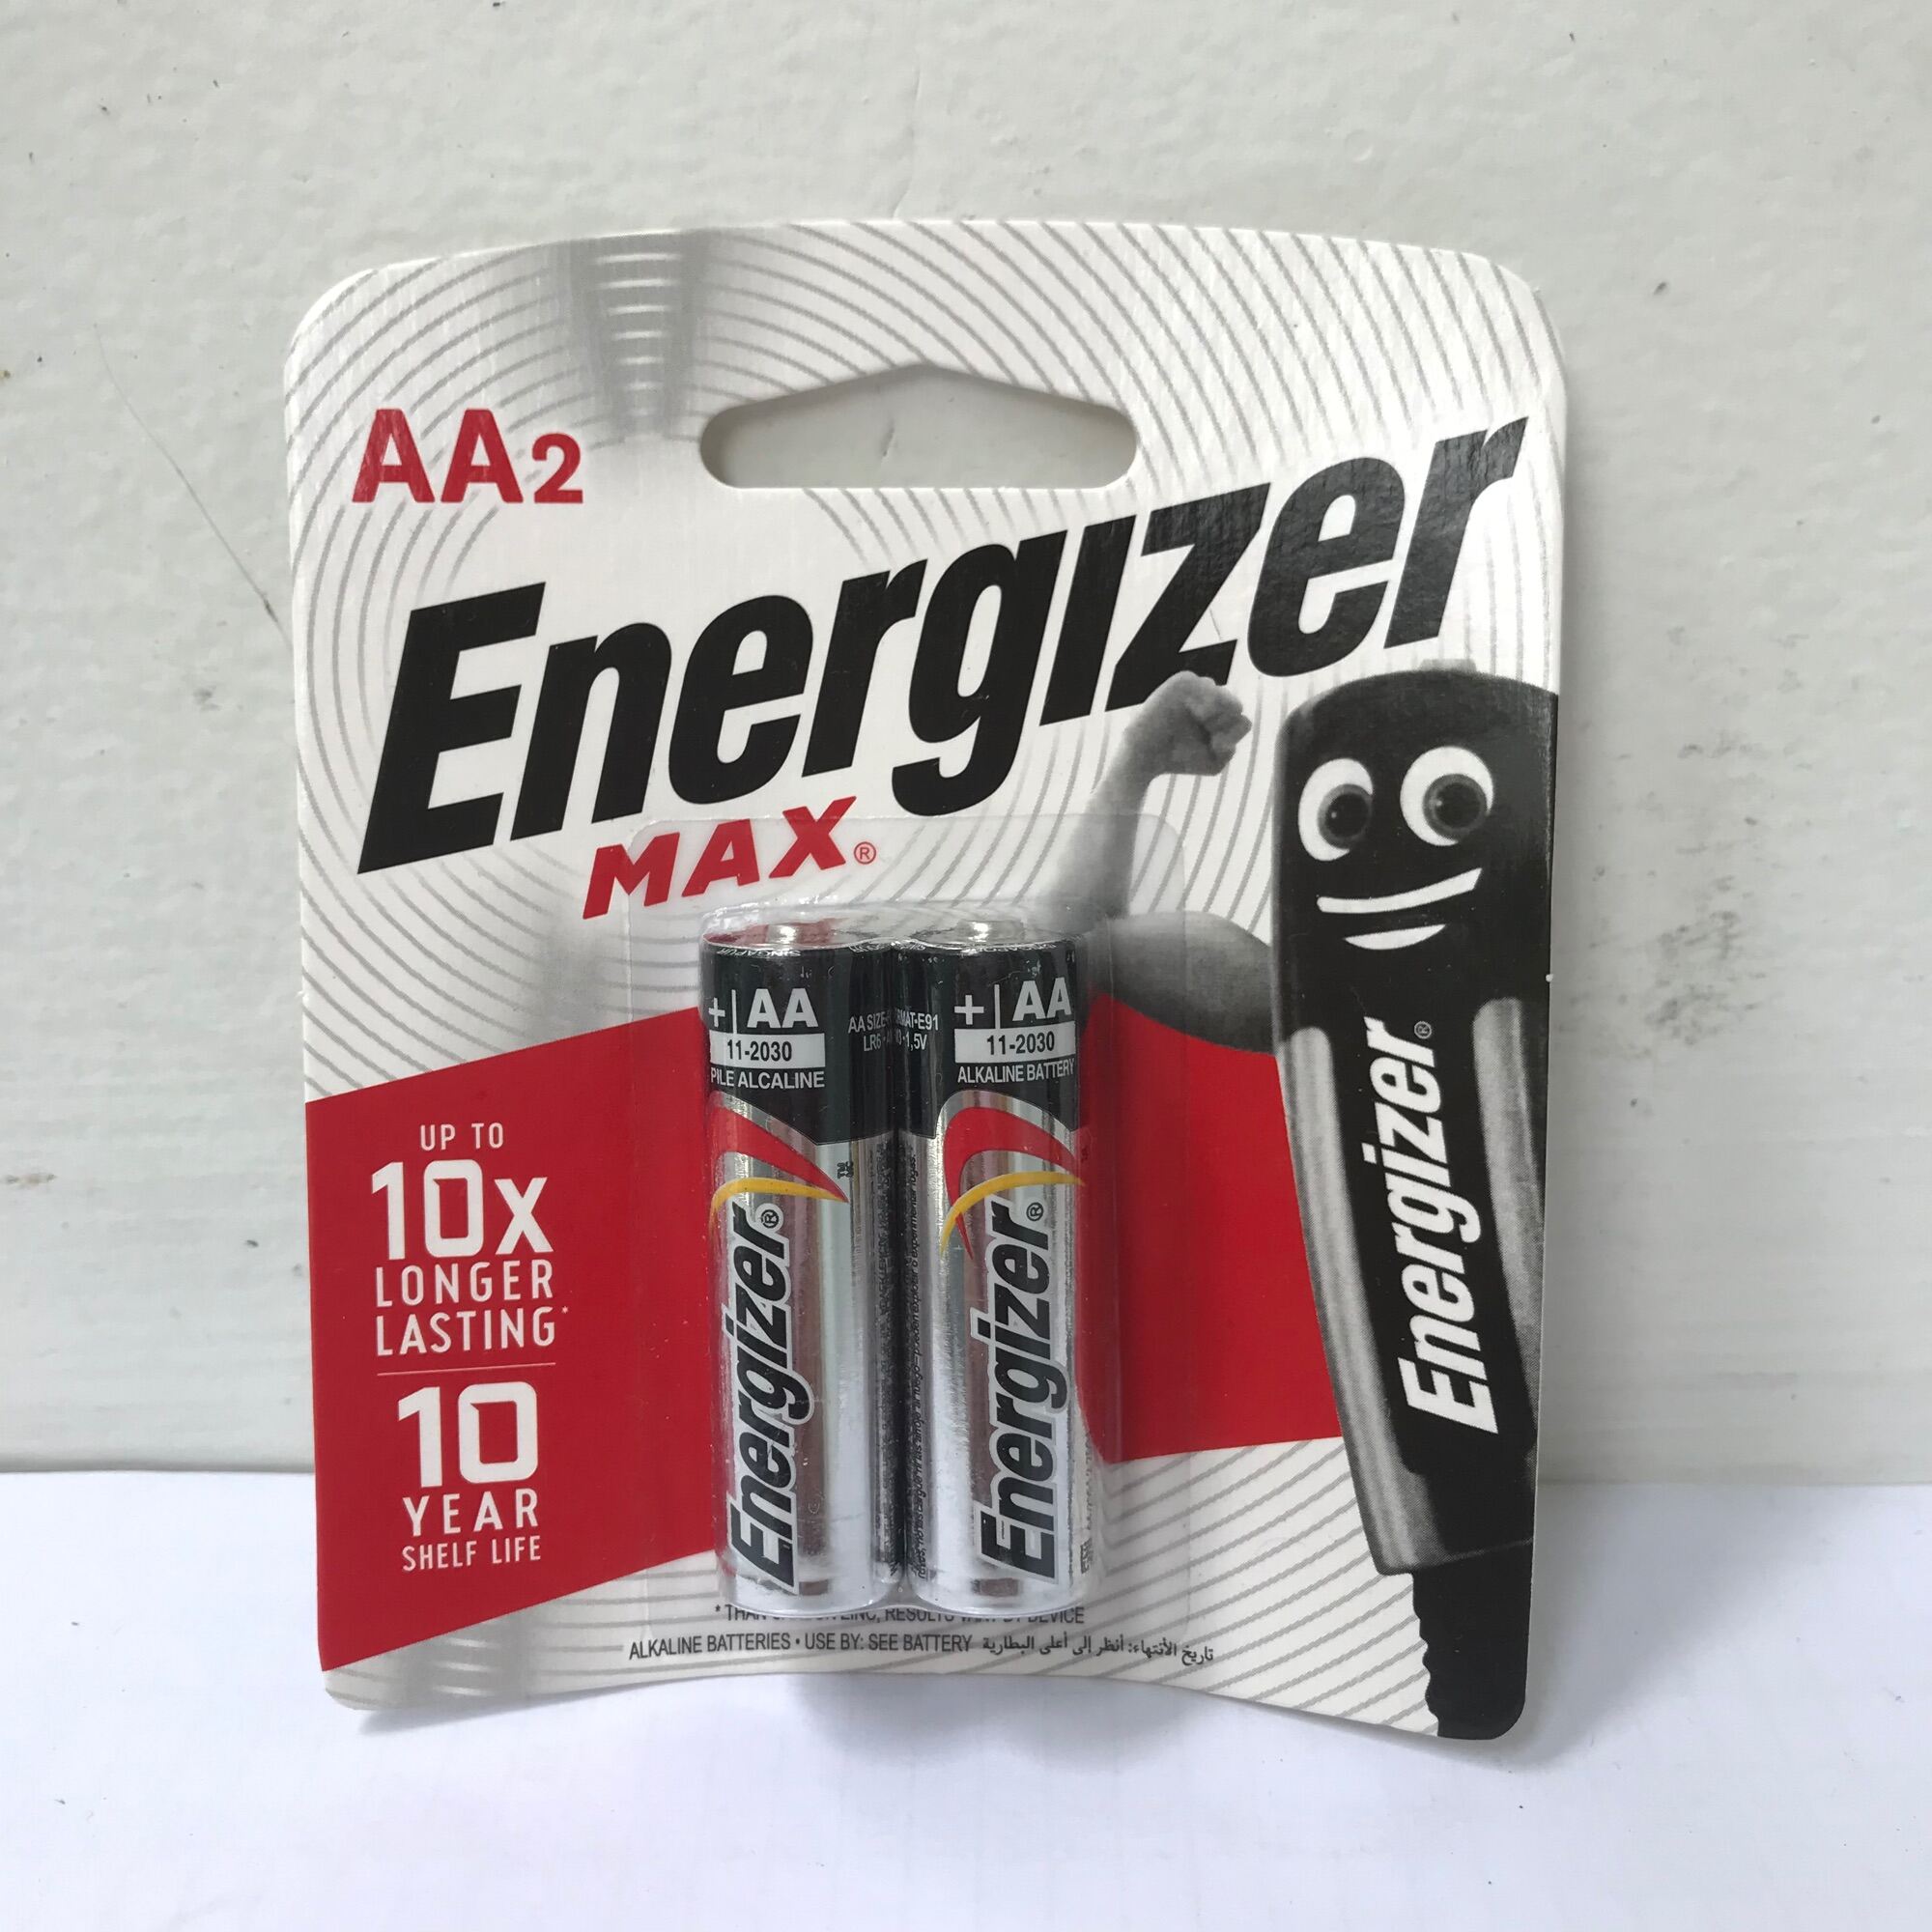 Vĩ 2 viên Pin ENERGIZER MAX 2A (AA), 3A (AAA) ALKALINE với khả năng lưu trữ cao - dùng cho Máy ảnh; máy đo tiểu đường; huyết áp; đèn pin; chuột máy tính